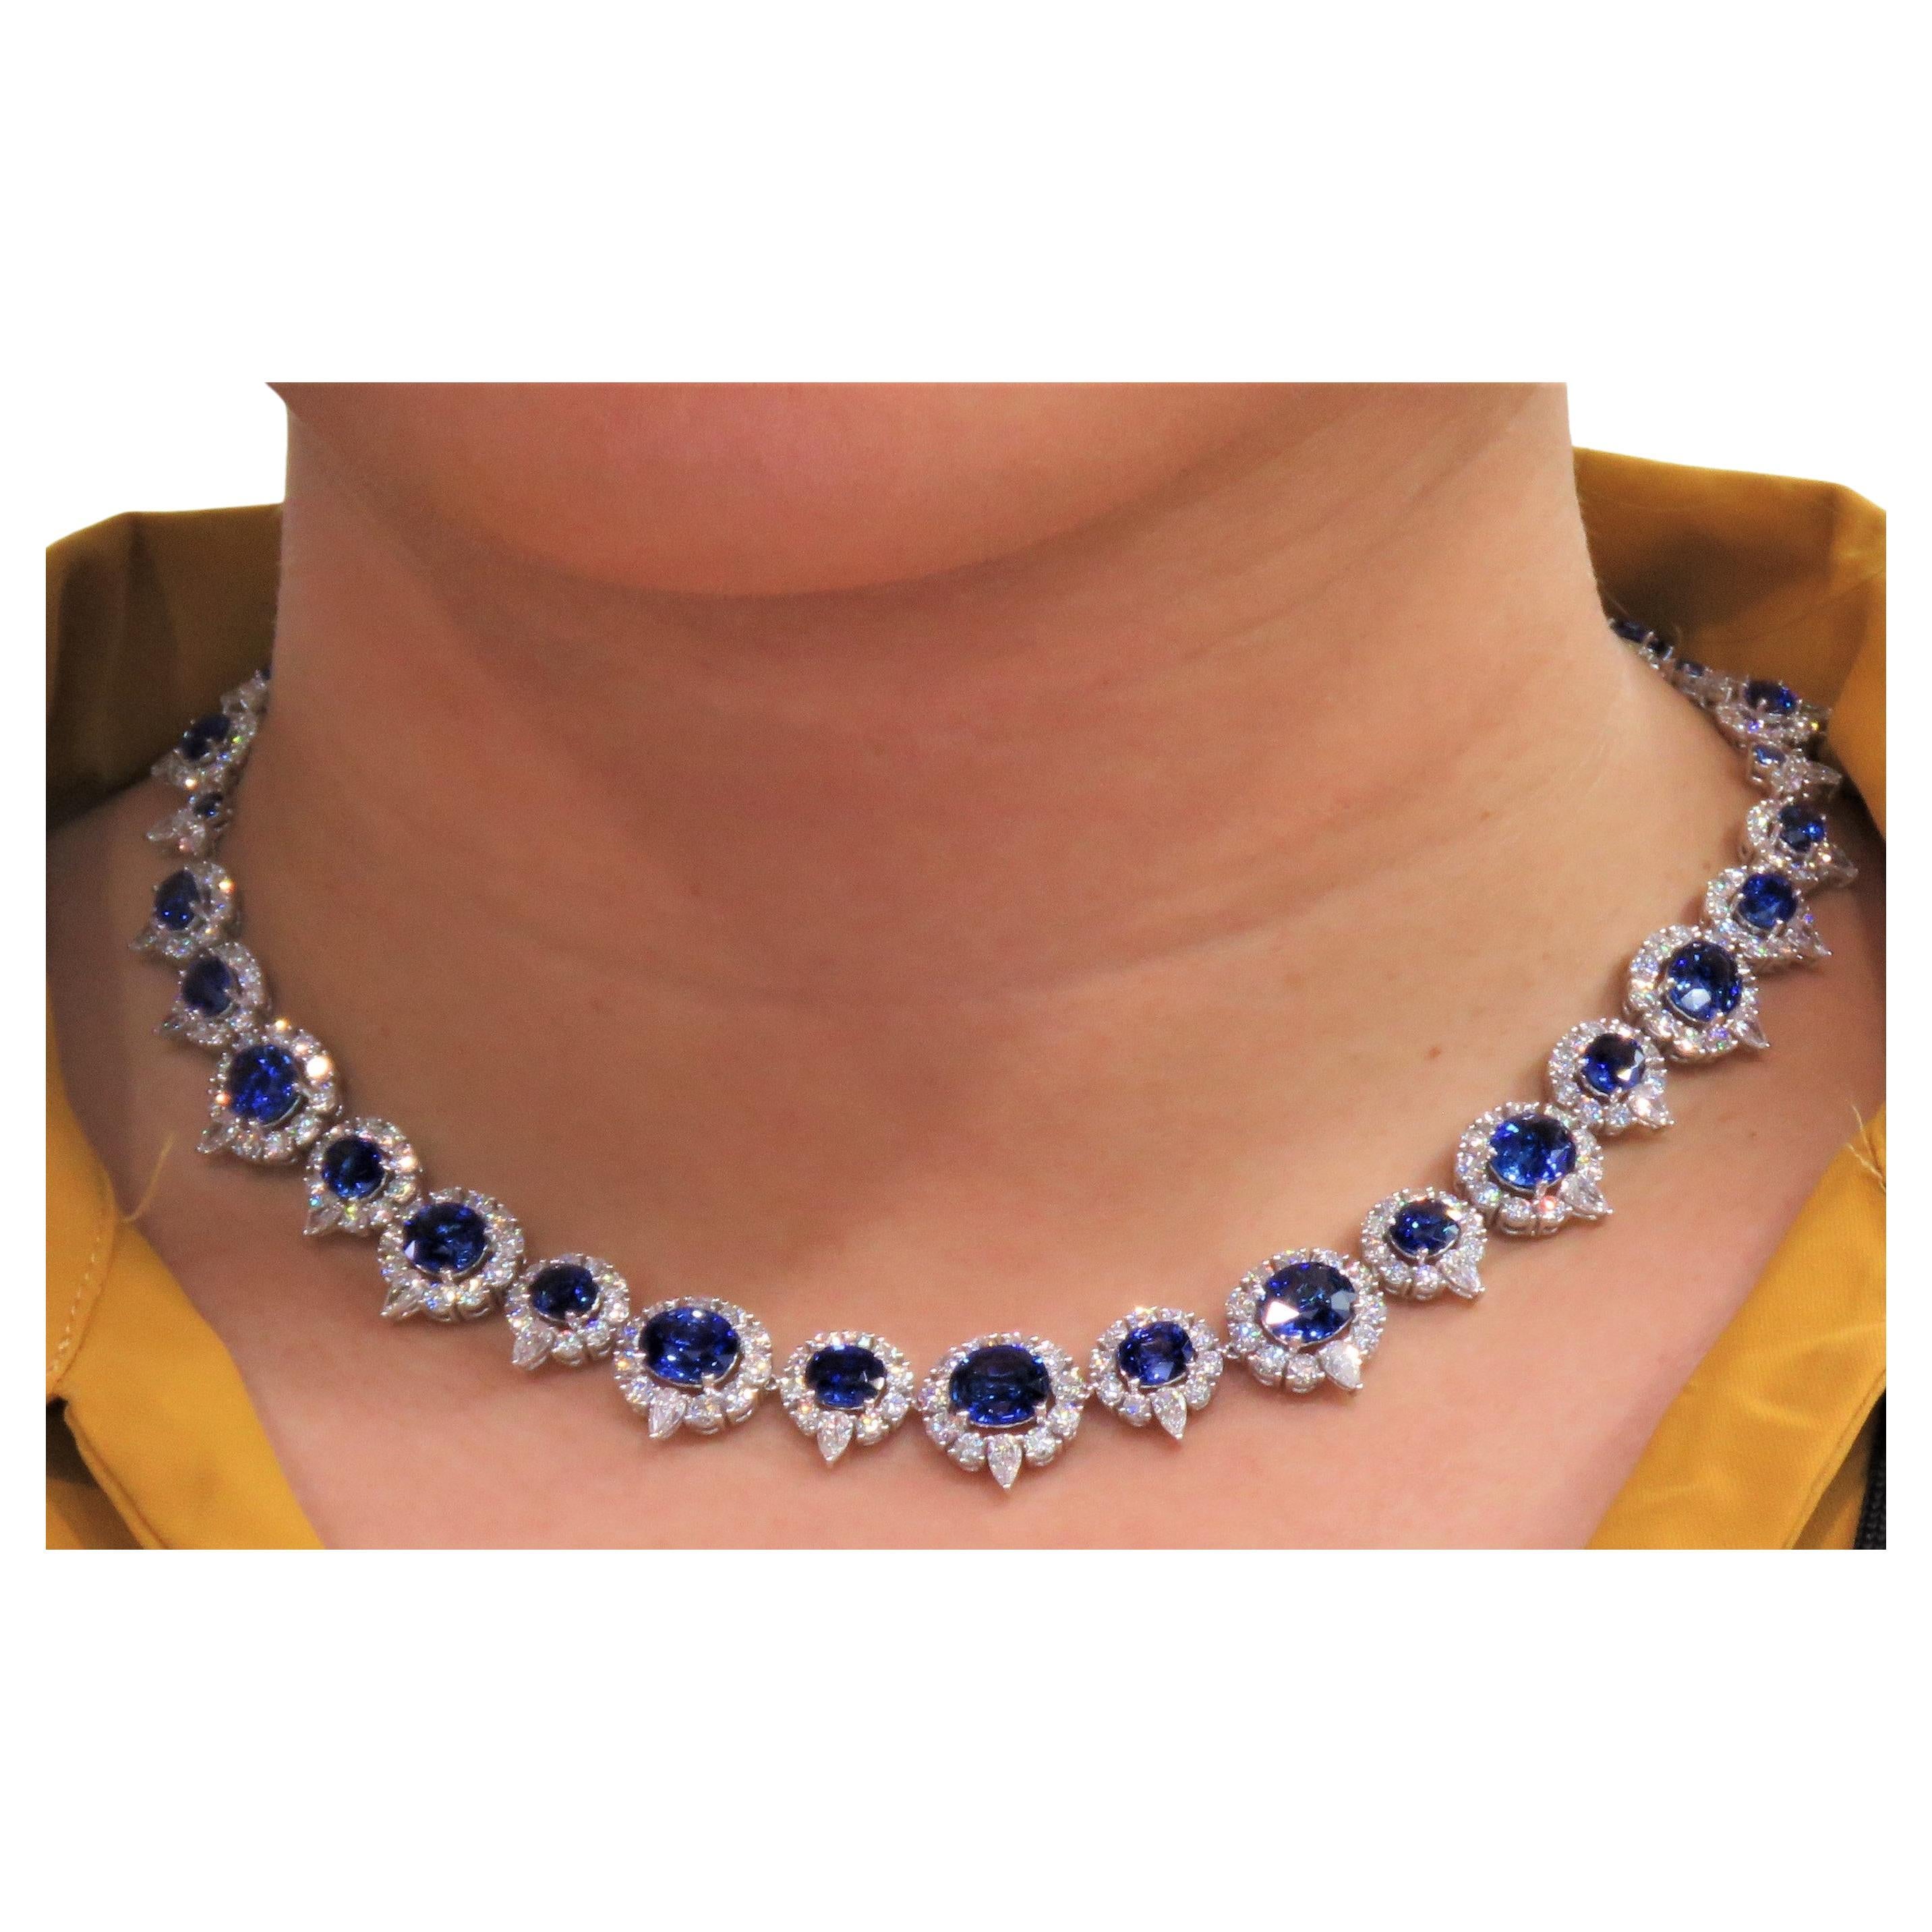 Rare collier de saphir bleu de Ceylan certifié GIA de 52 carats, 352 000 $ NWT